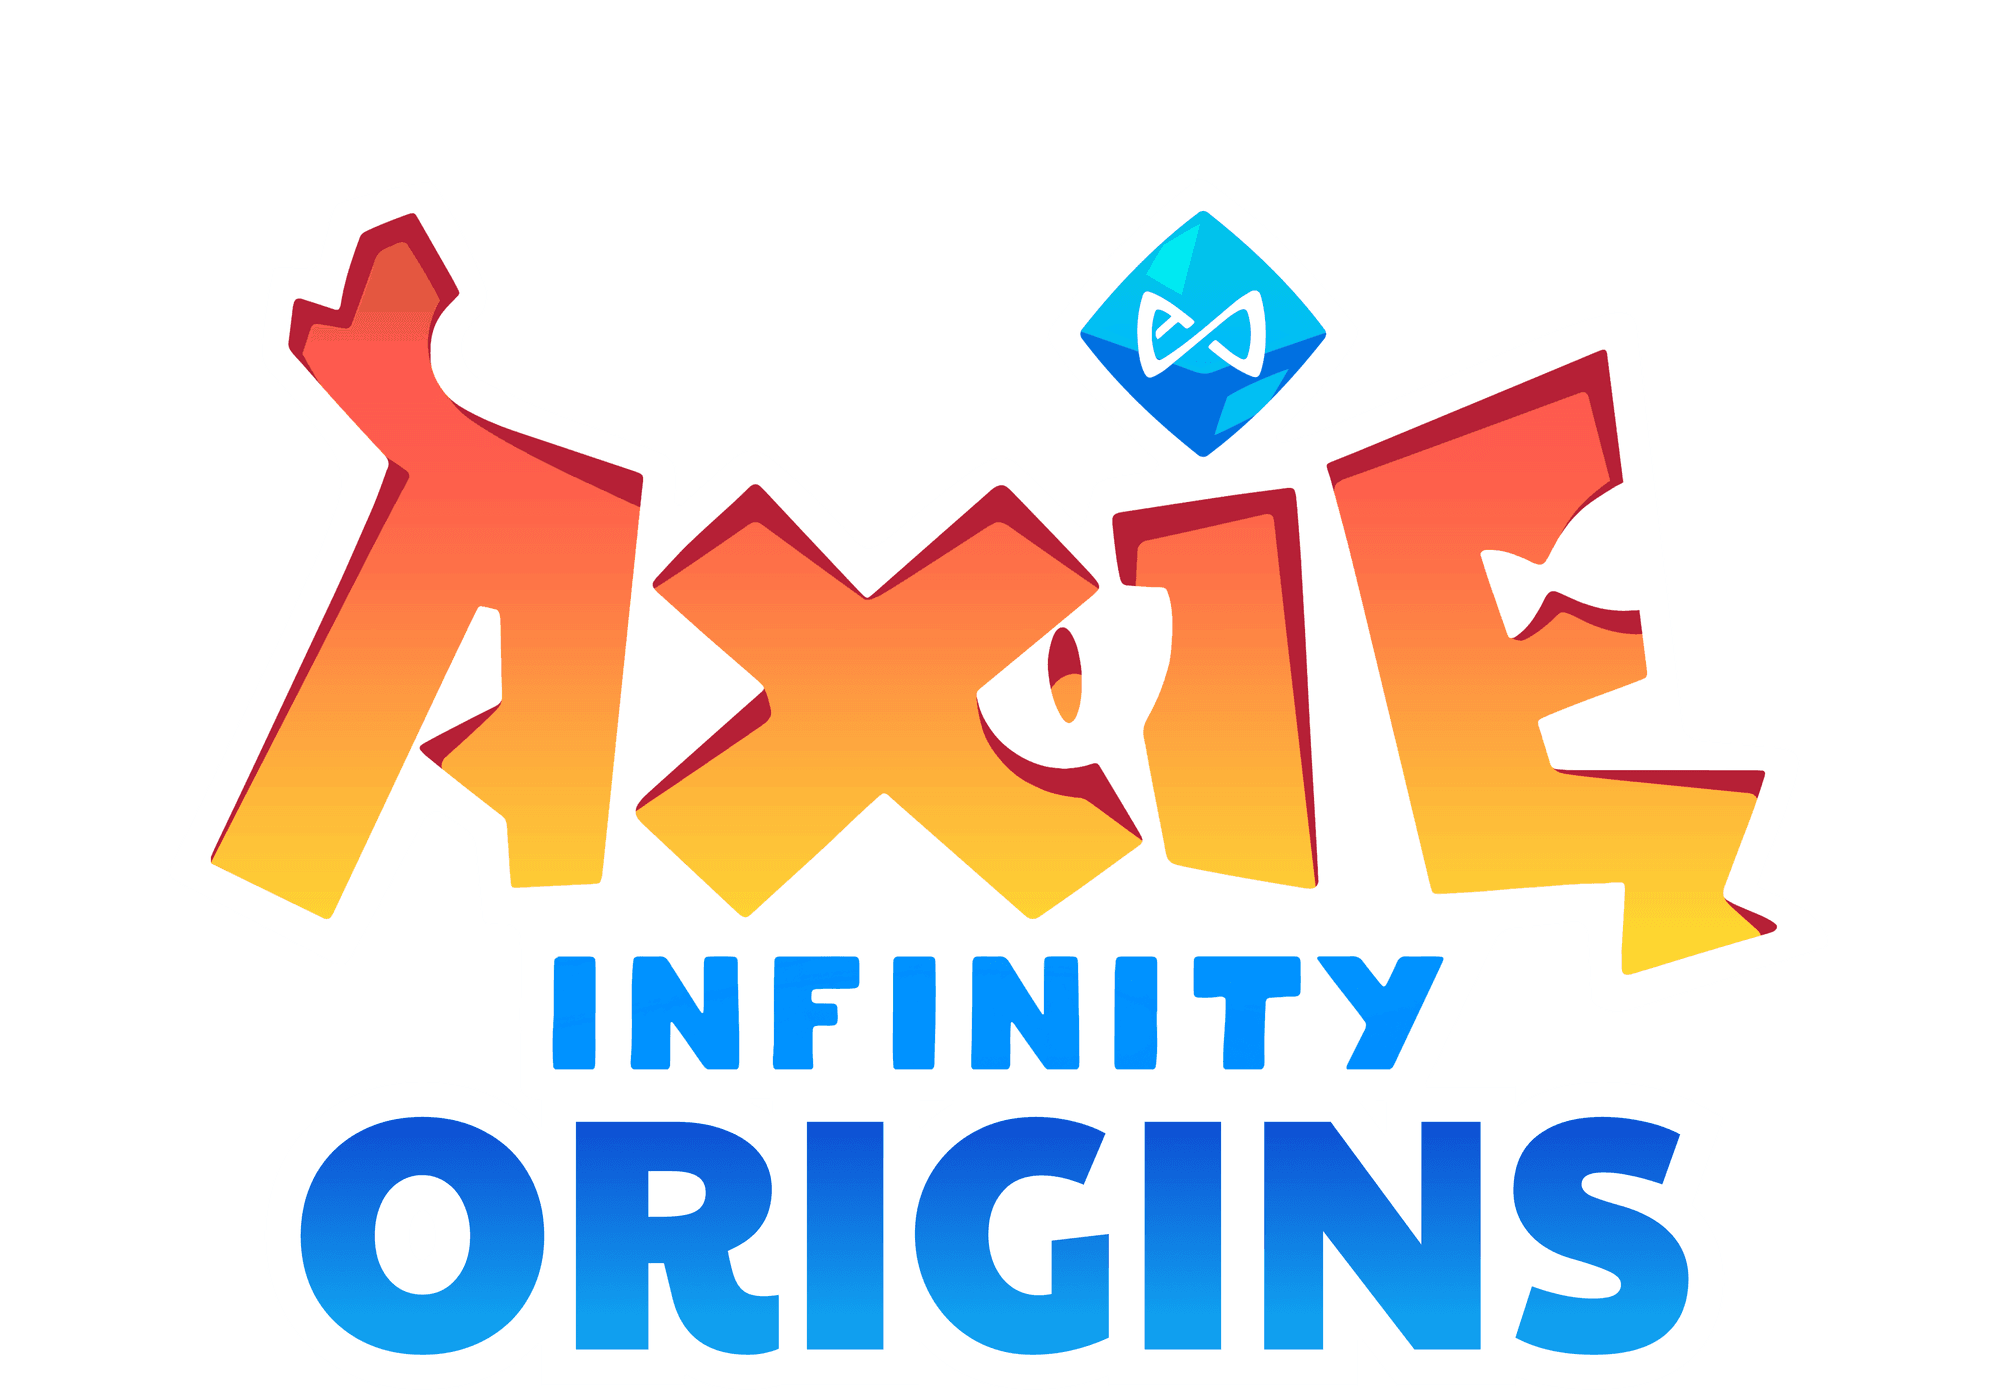 axie infinity origins.png